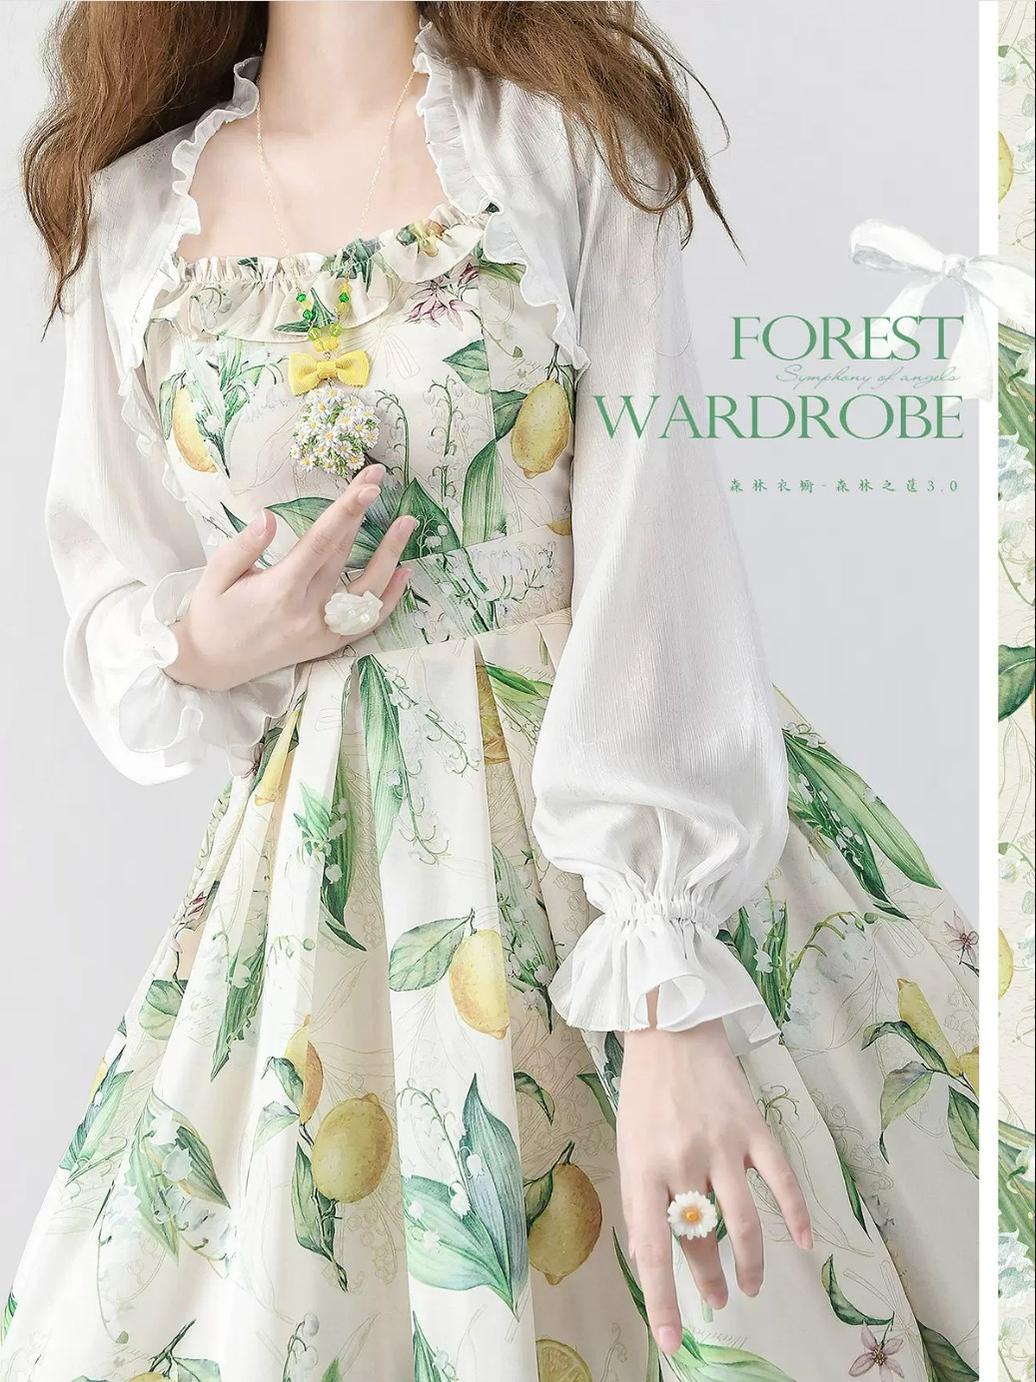 Forest Wardrobe~Forest Basket 3.0~Vintage Lolita JSK Dress Summer Thin Dress   